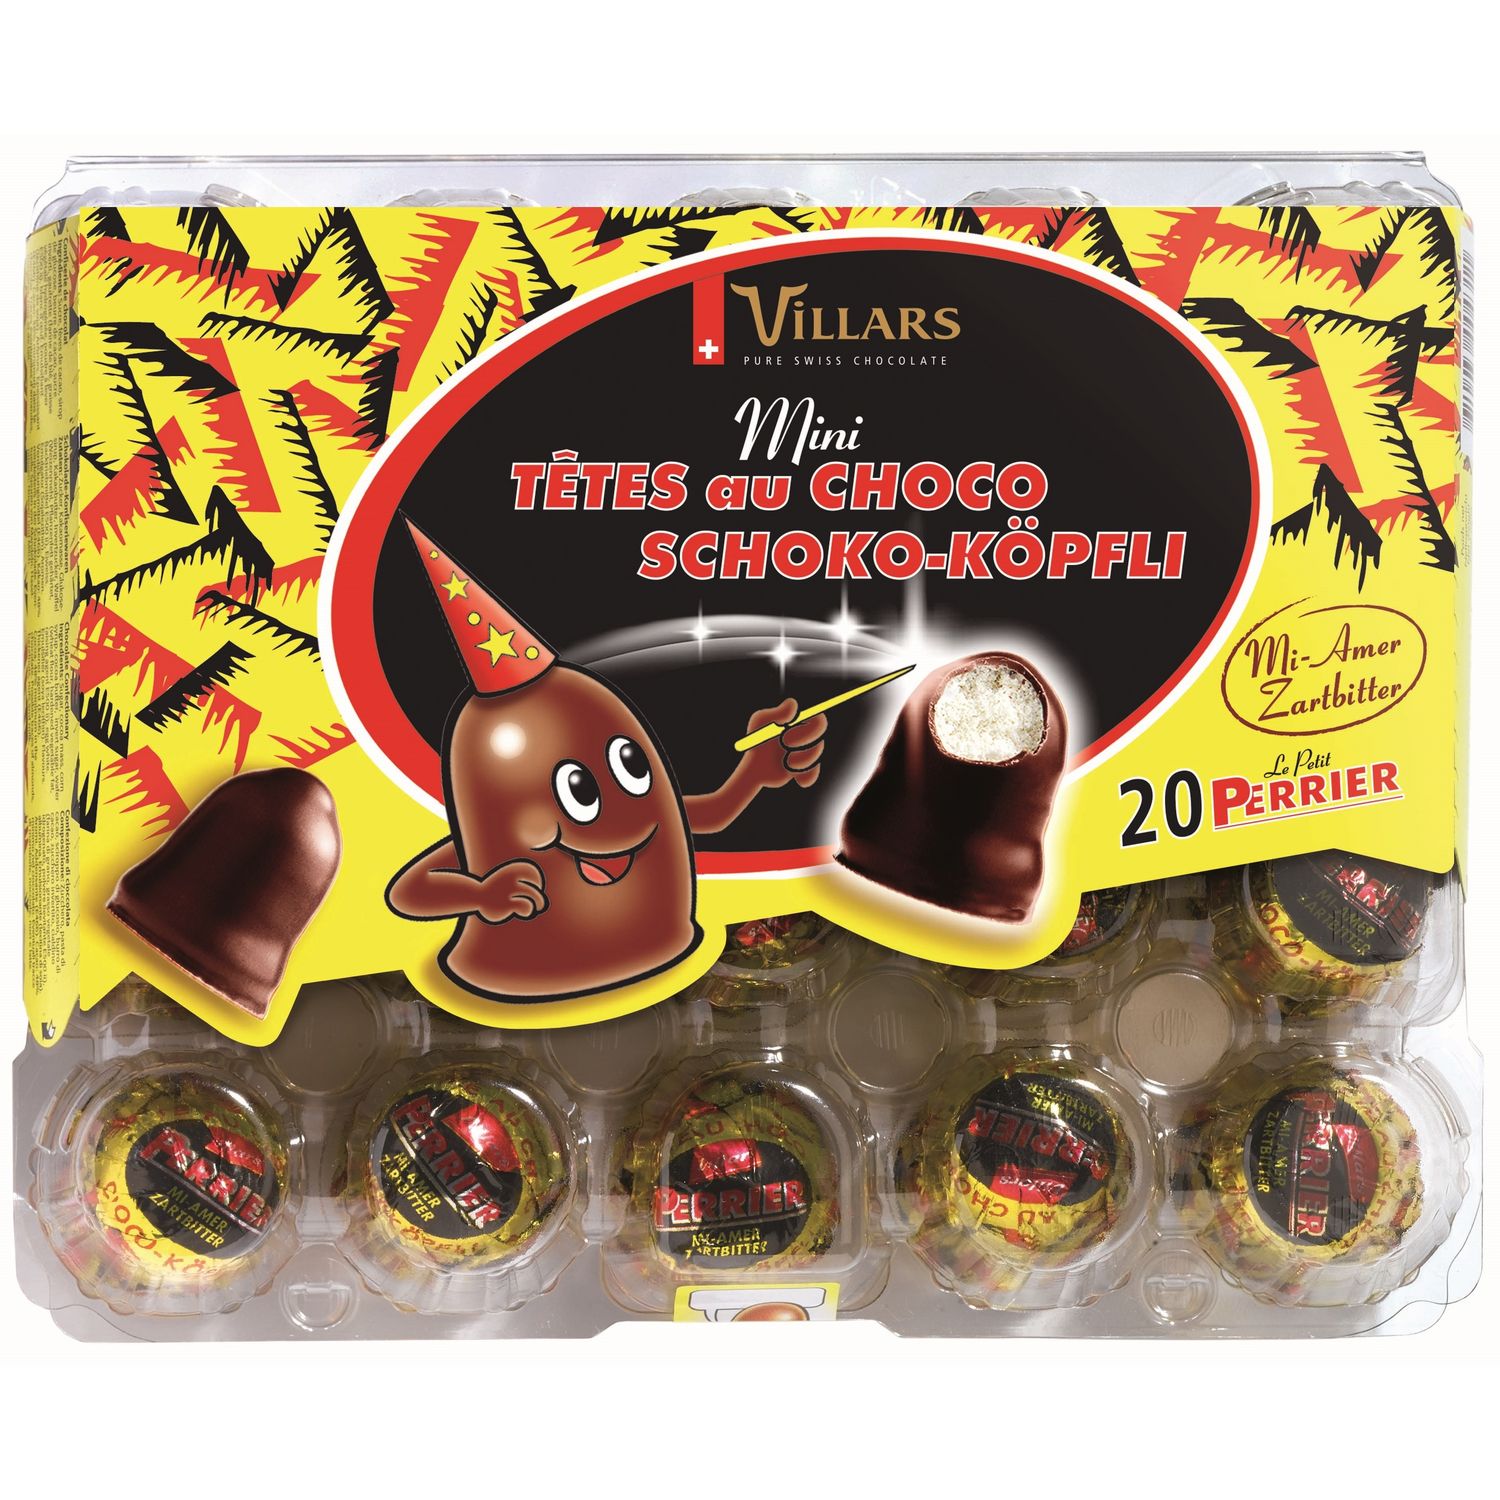 Accueil - Chocolat Suisse